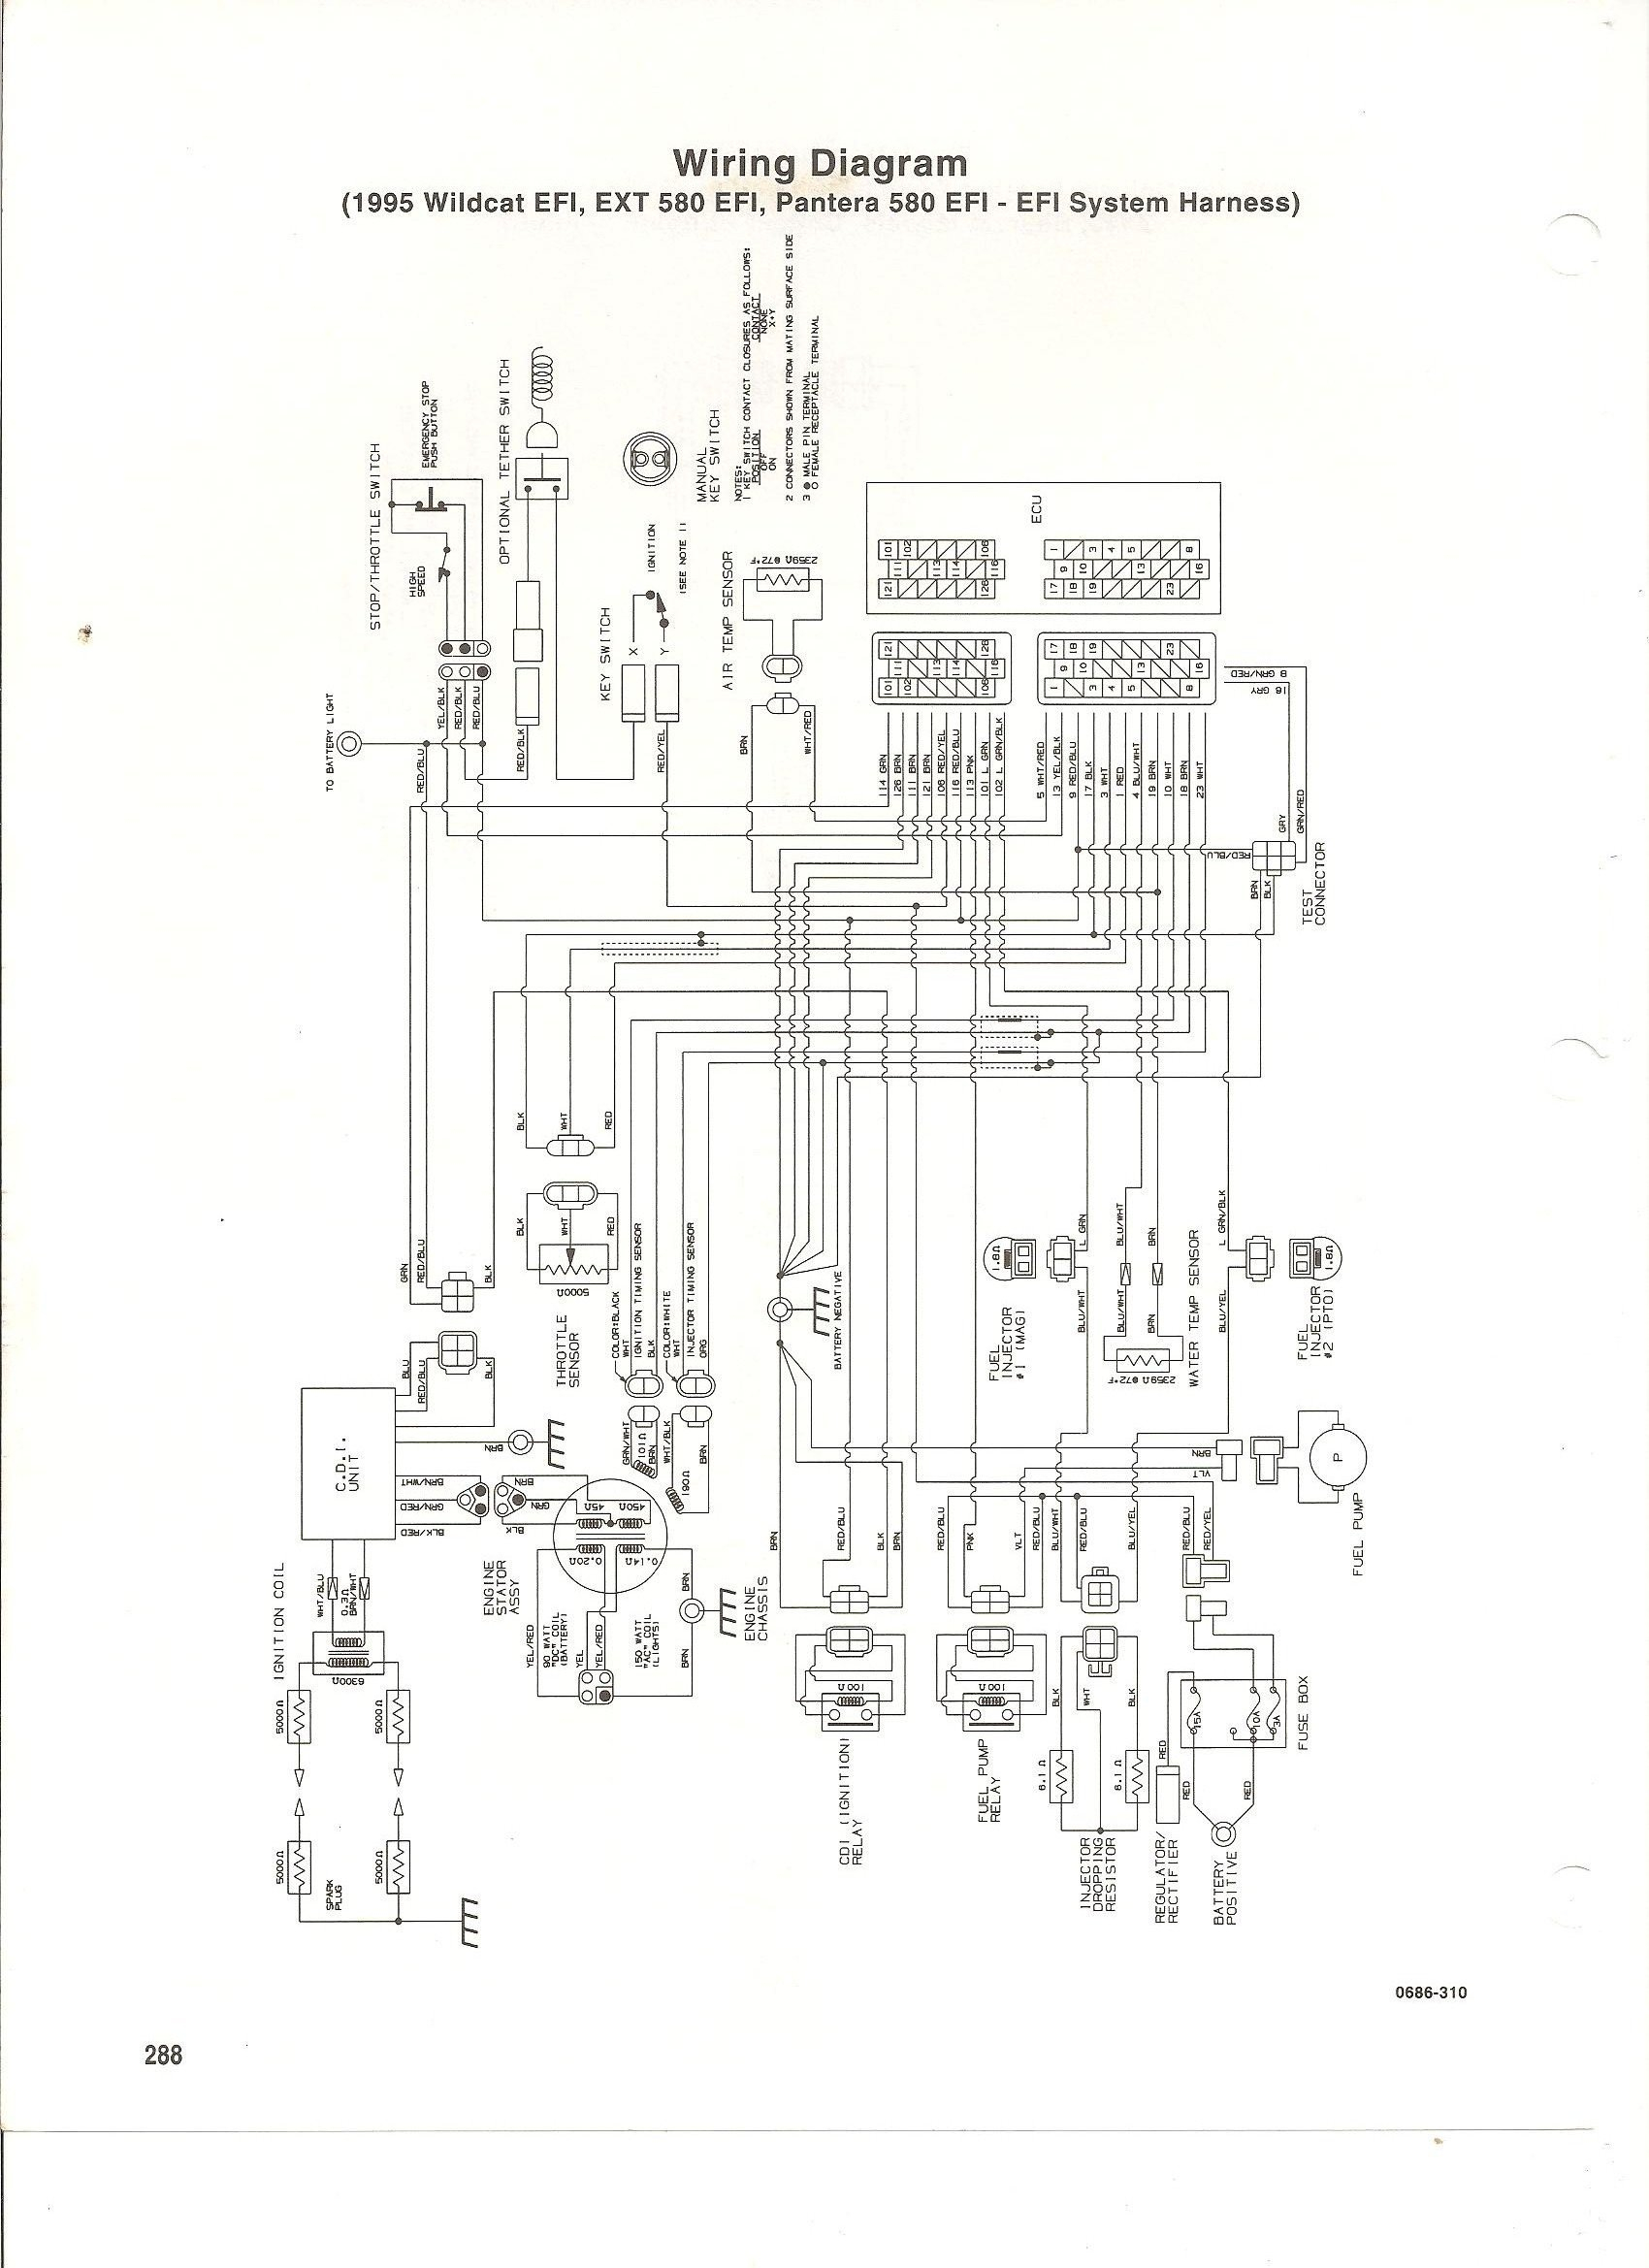 1994 Arctic Cat 580 Ext Wiring Diagram